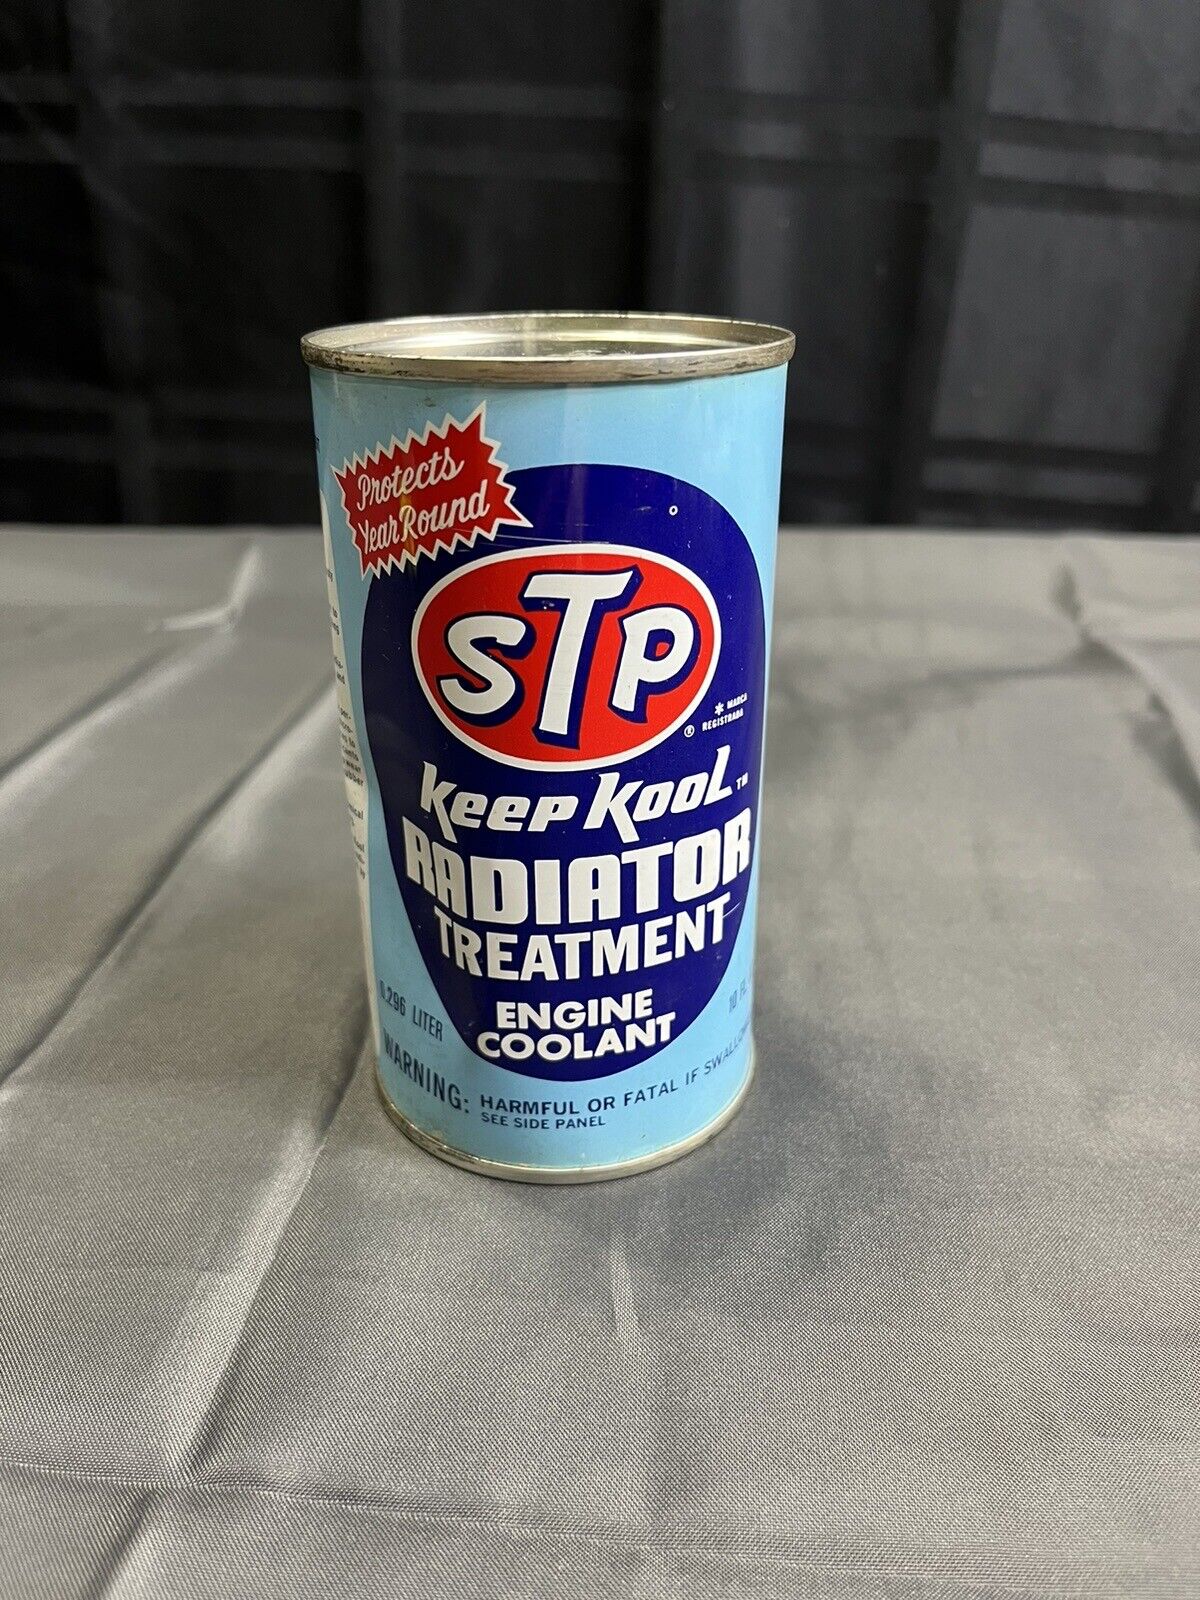 Vintage 1970 STP Keep Kool Radiator Treatment Can Full 10 OZ